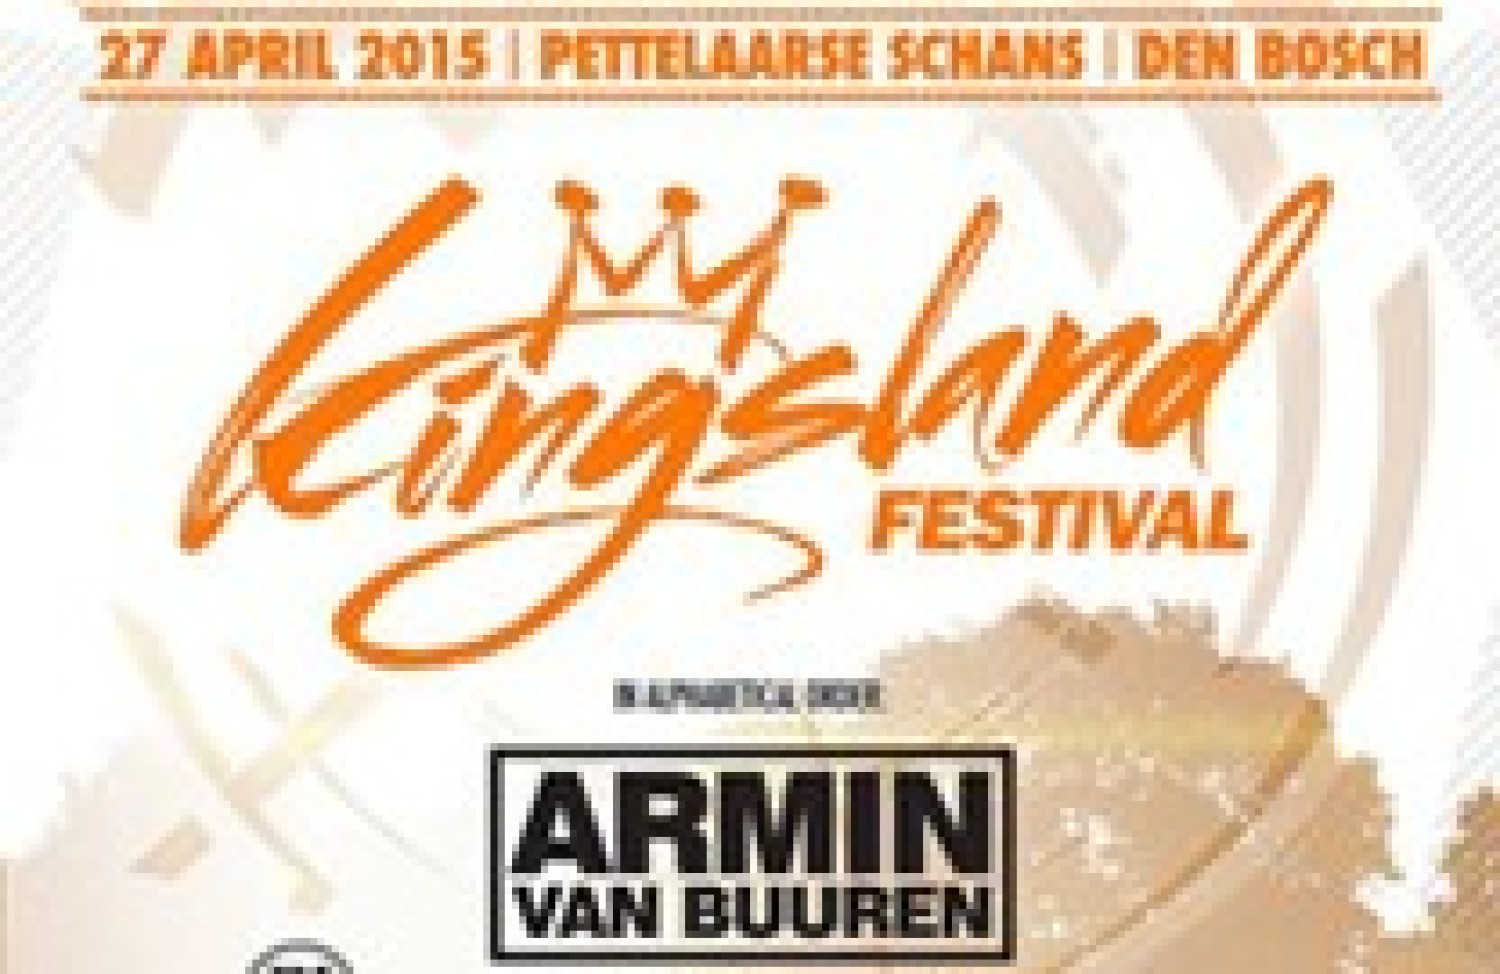 Party nieuws: Koninklijke line-up bij Kingsland Festival Den Bosch!